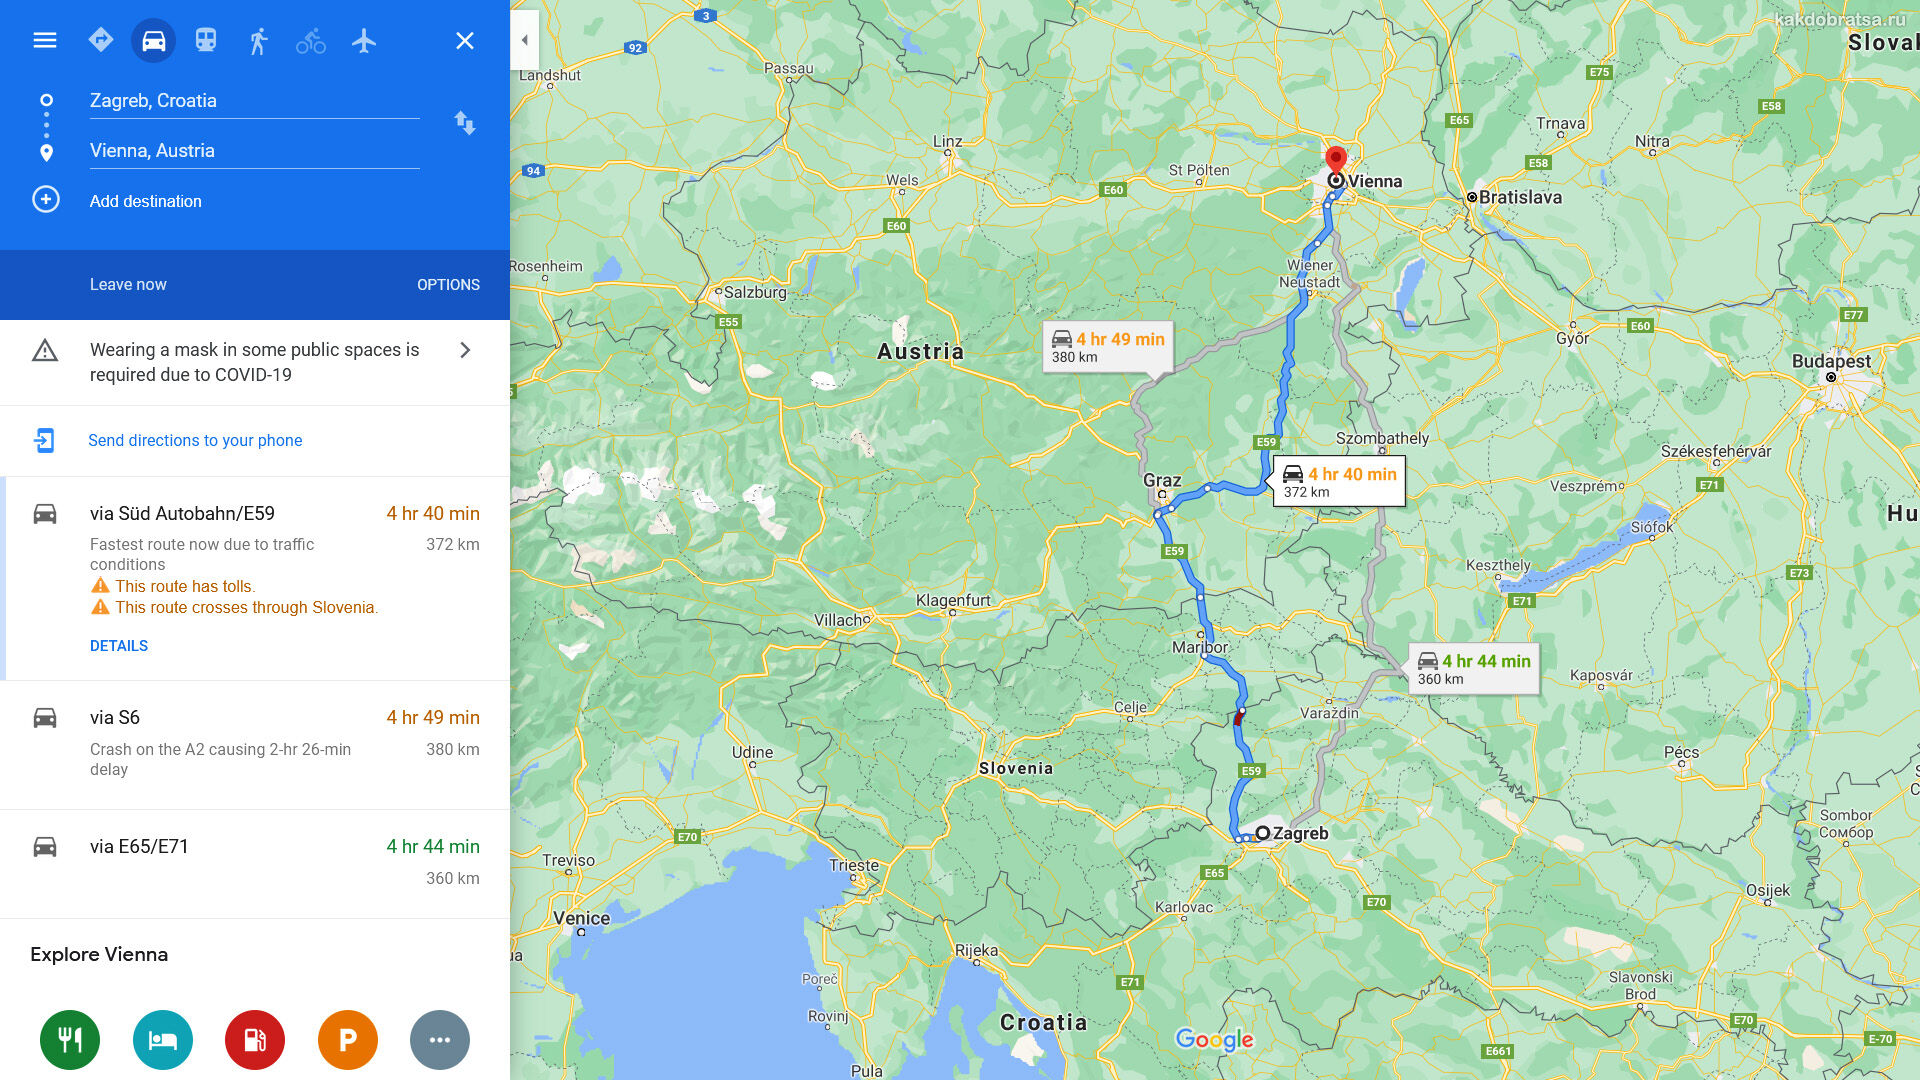 Расстояние между Загребом и Веной по карте